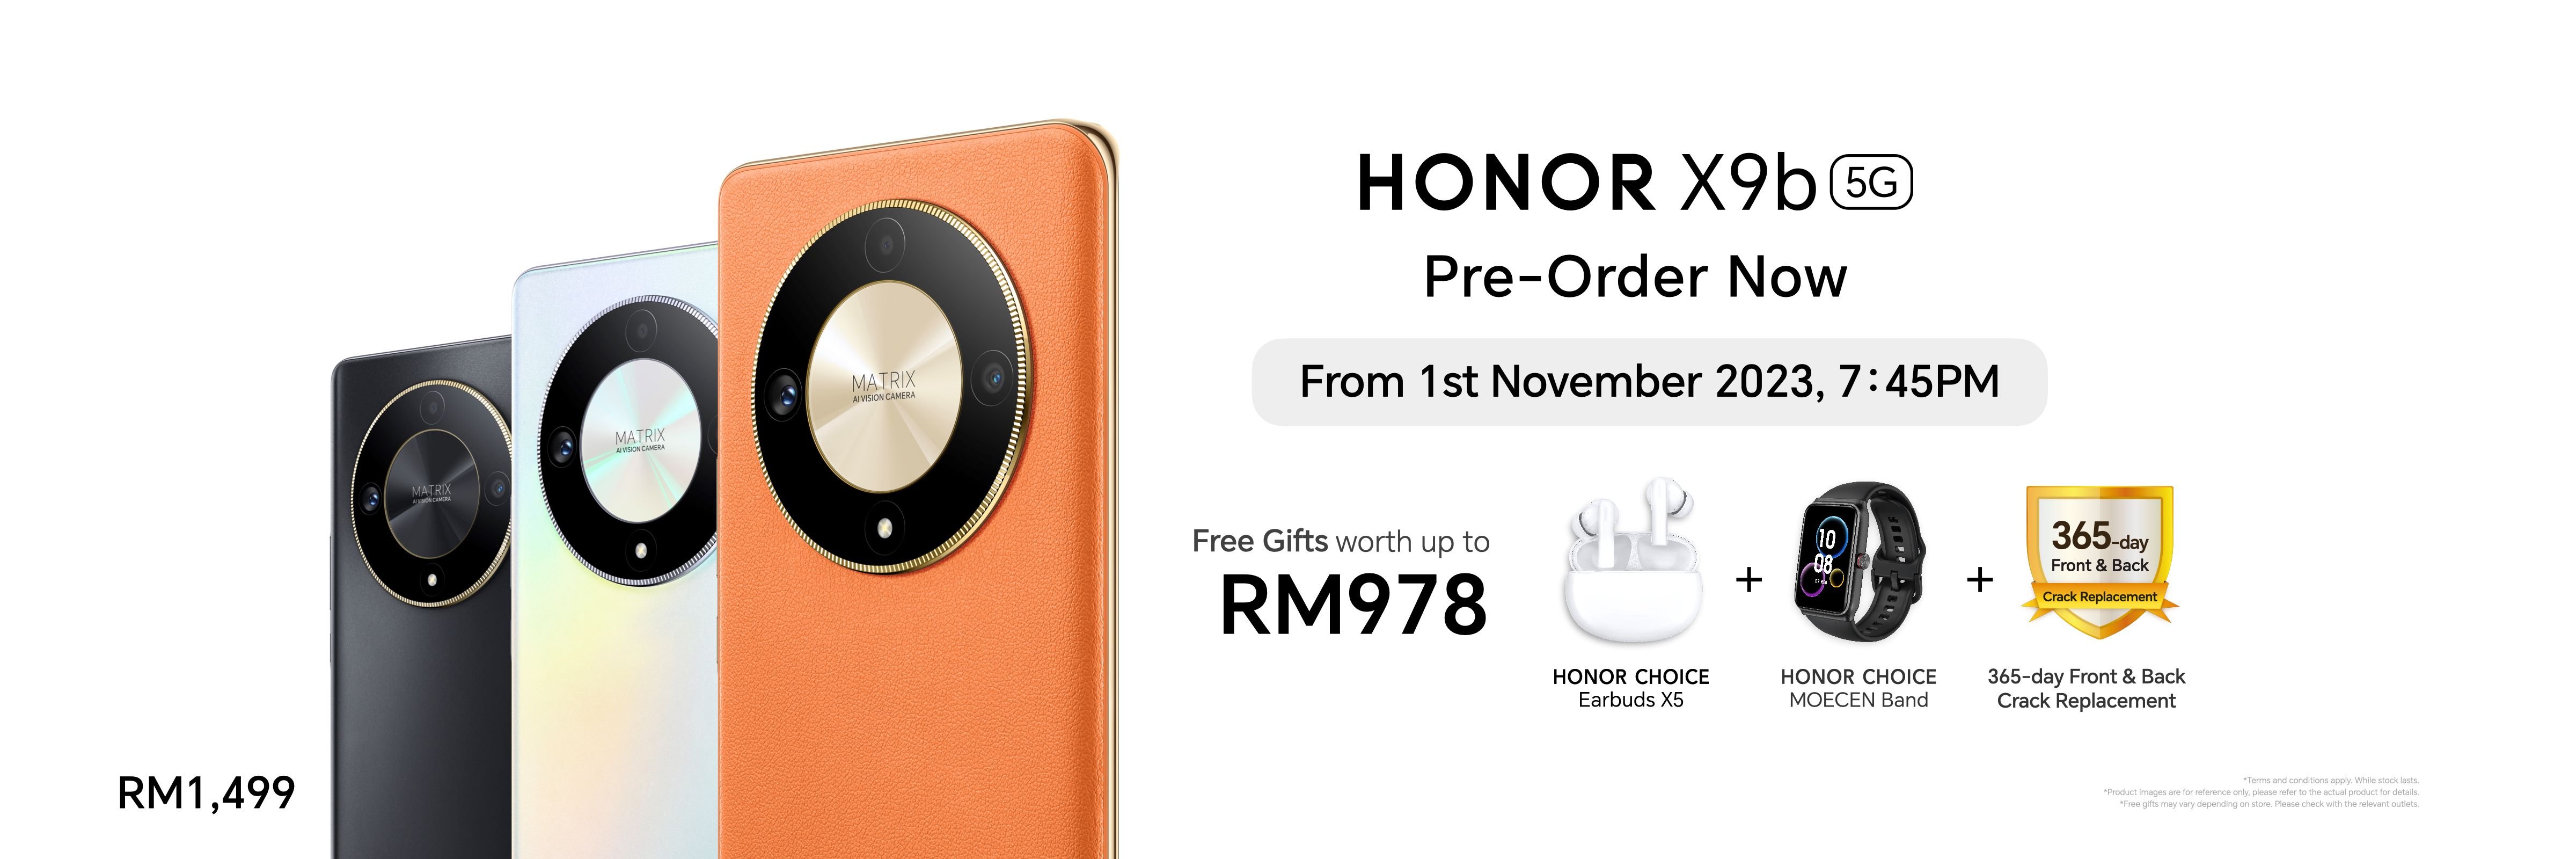 HONOR X9b Malaysia